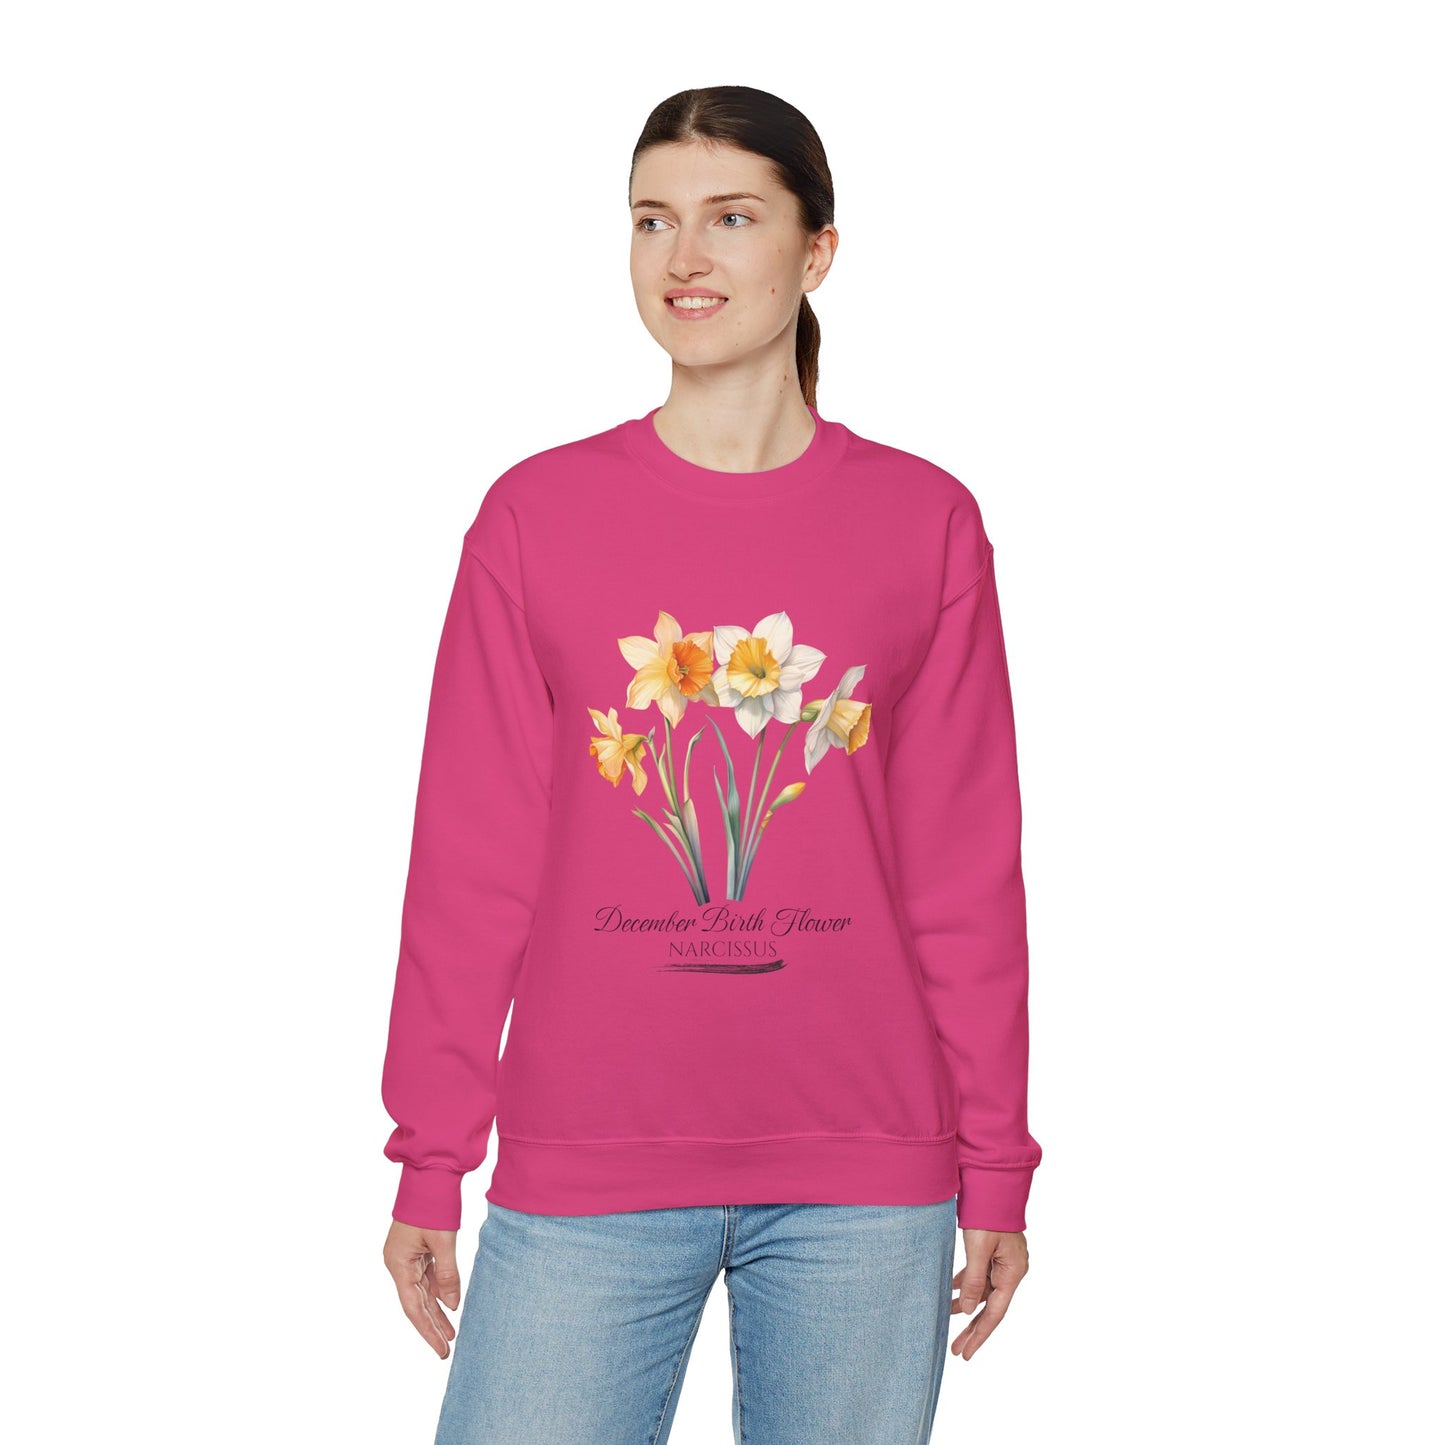 December Birth Flower (Narcisus) - Unisex Heavy Blend™ Crewneck Sweatshirt